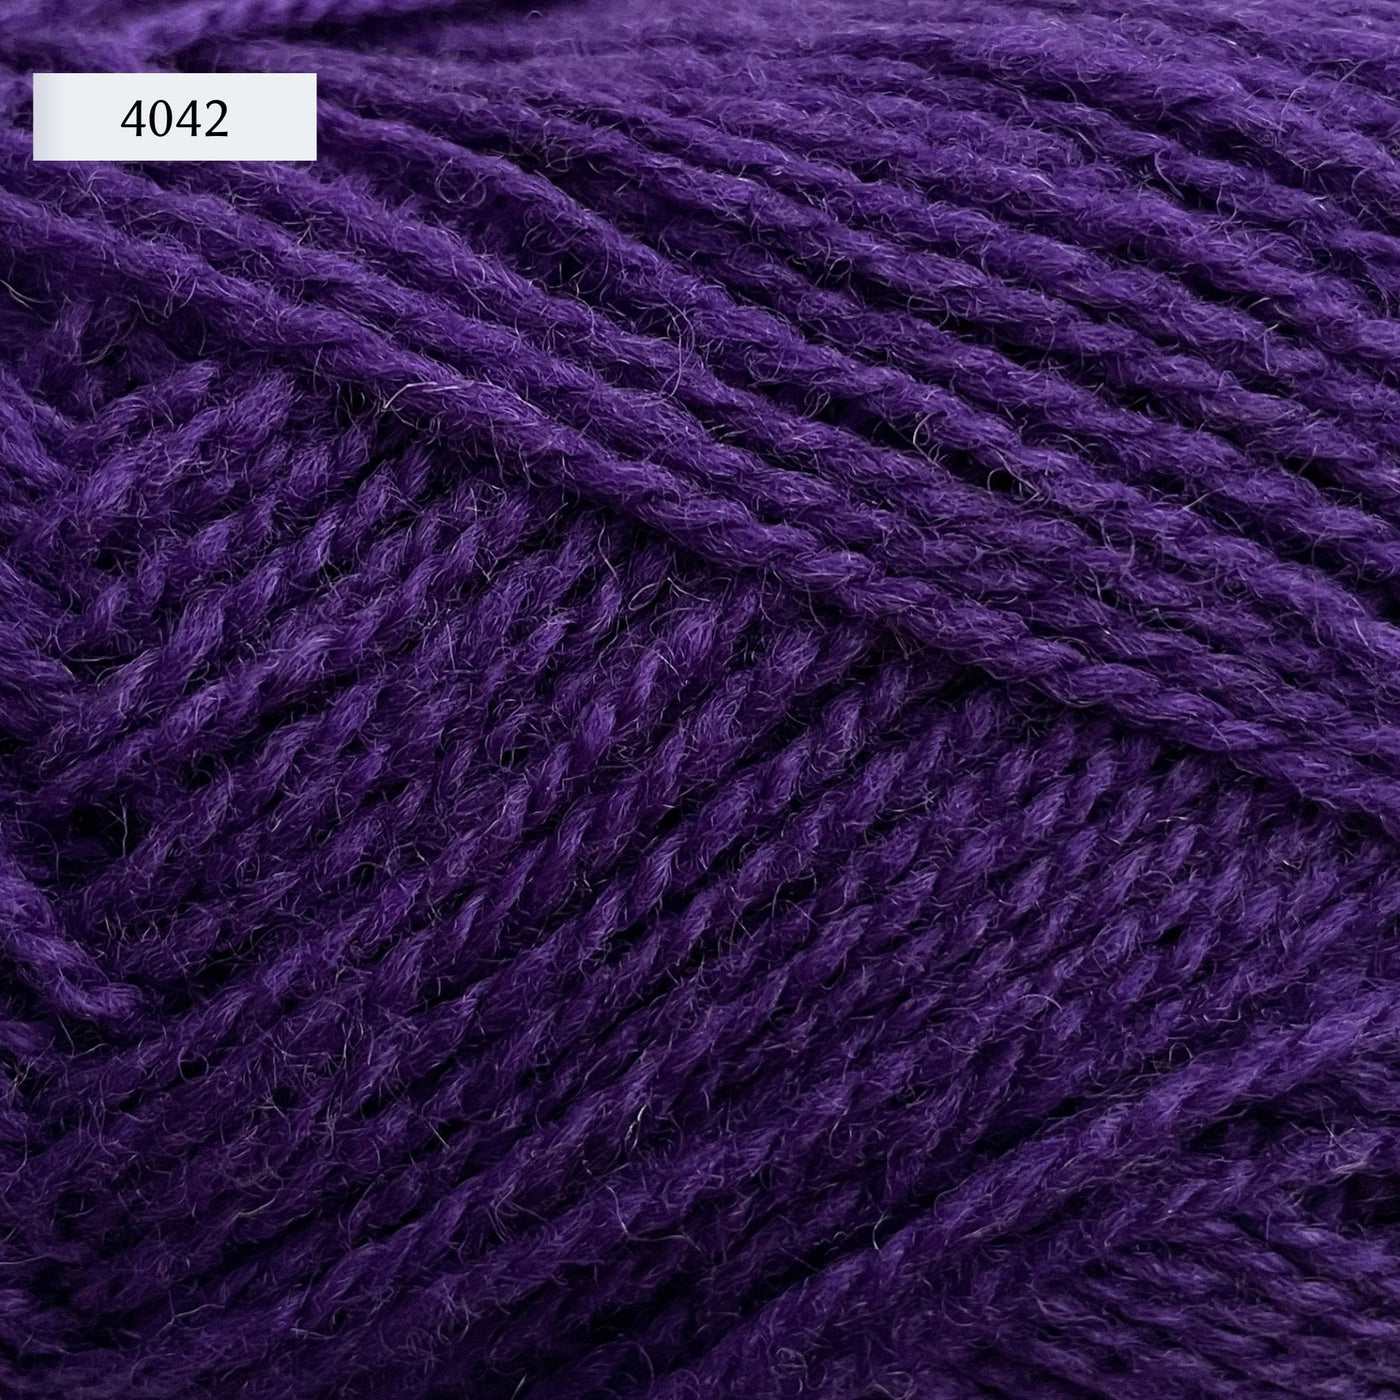 Rauma Finullgarn, a fingering/sport weight yarn, in color 4042, a royal purple